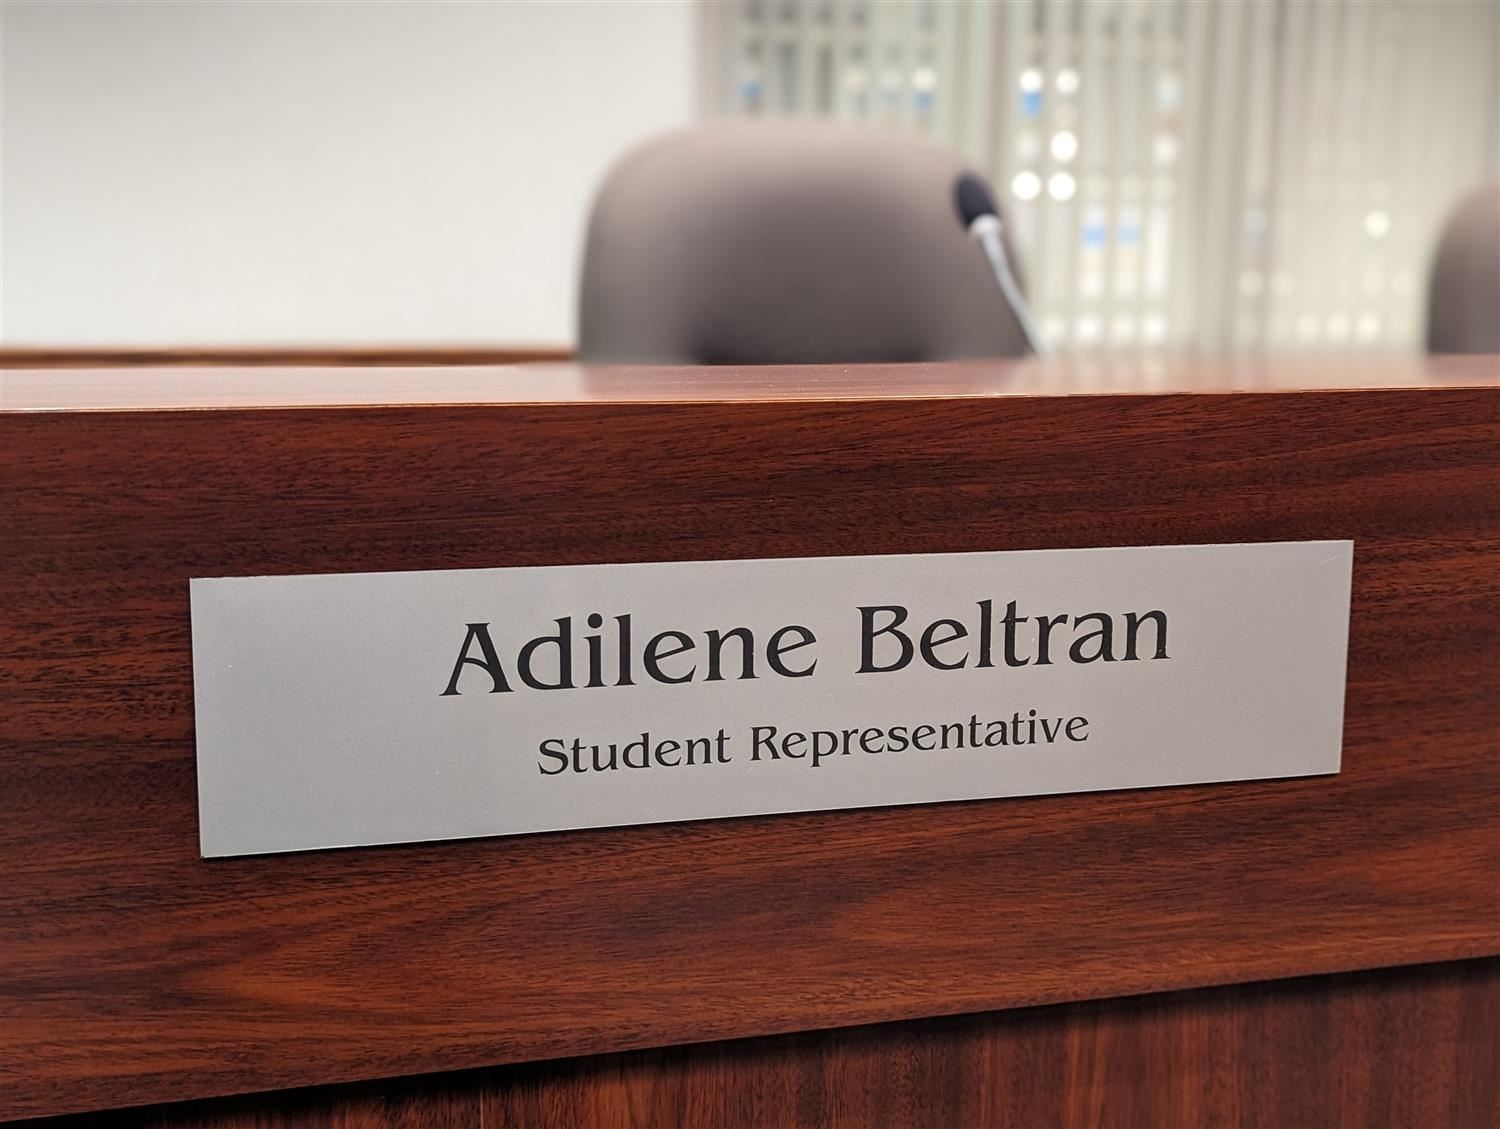 GIPS Board Room name plate reading:  Adilene Beltran, Student Representative